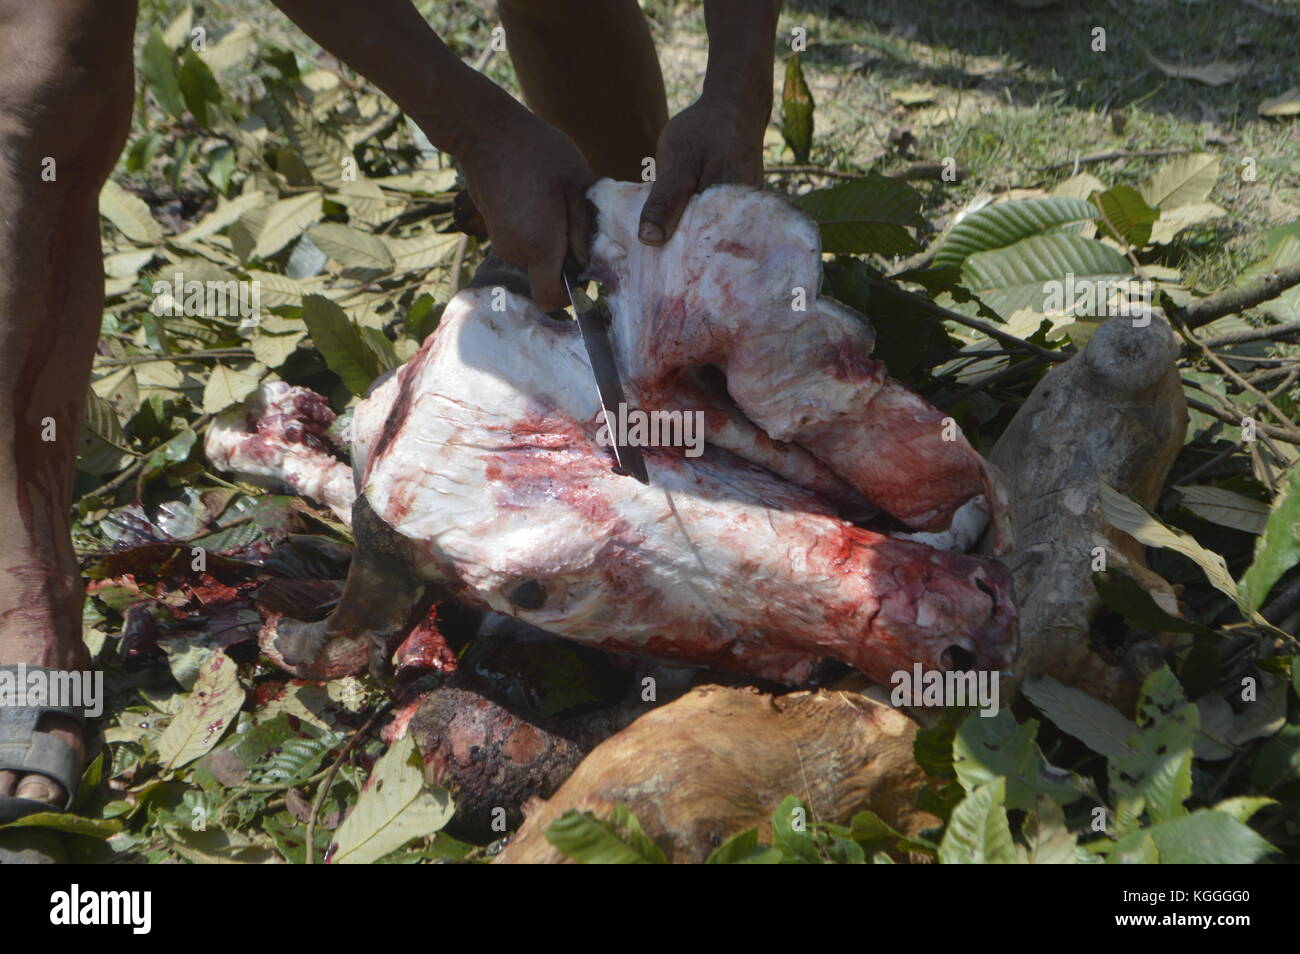 Macellazione di bufalo d'acqua nel piccolo villaggio nepalese in modo umano. Ucciso con 3 colpi del lato non affilato di un'ascia sulla testa. Tutti gli uomini aiutano. Foto Stock